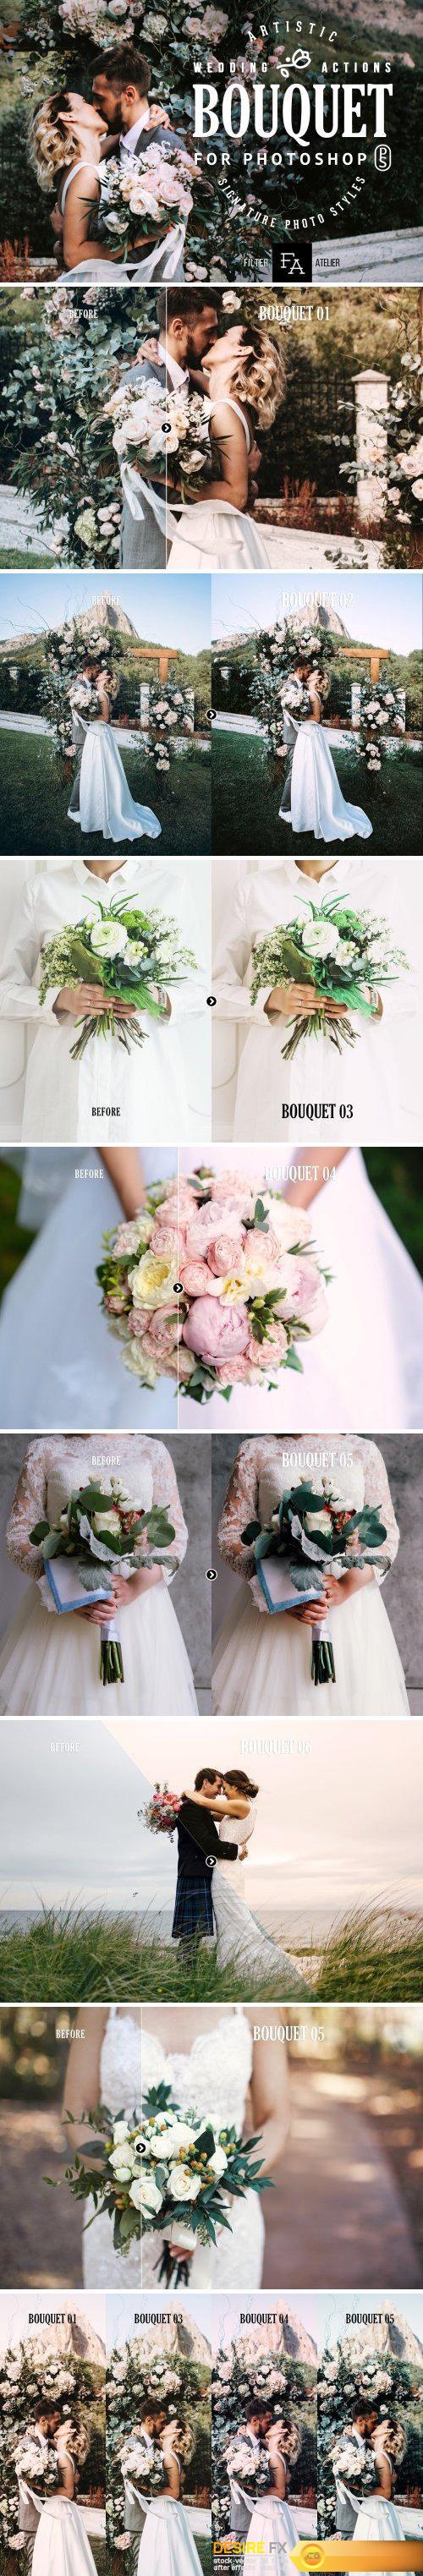 CM - Bouquet Wedding Photoshop Actions 2170025